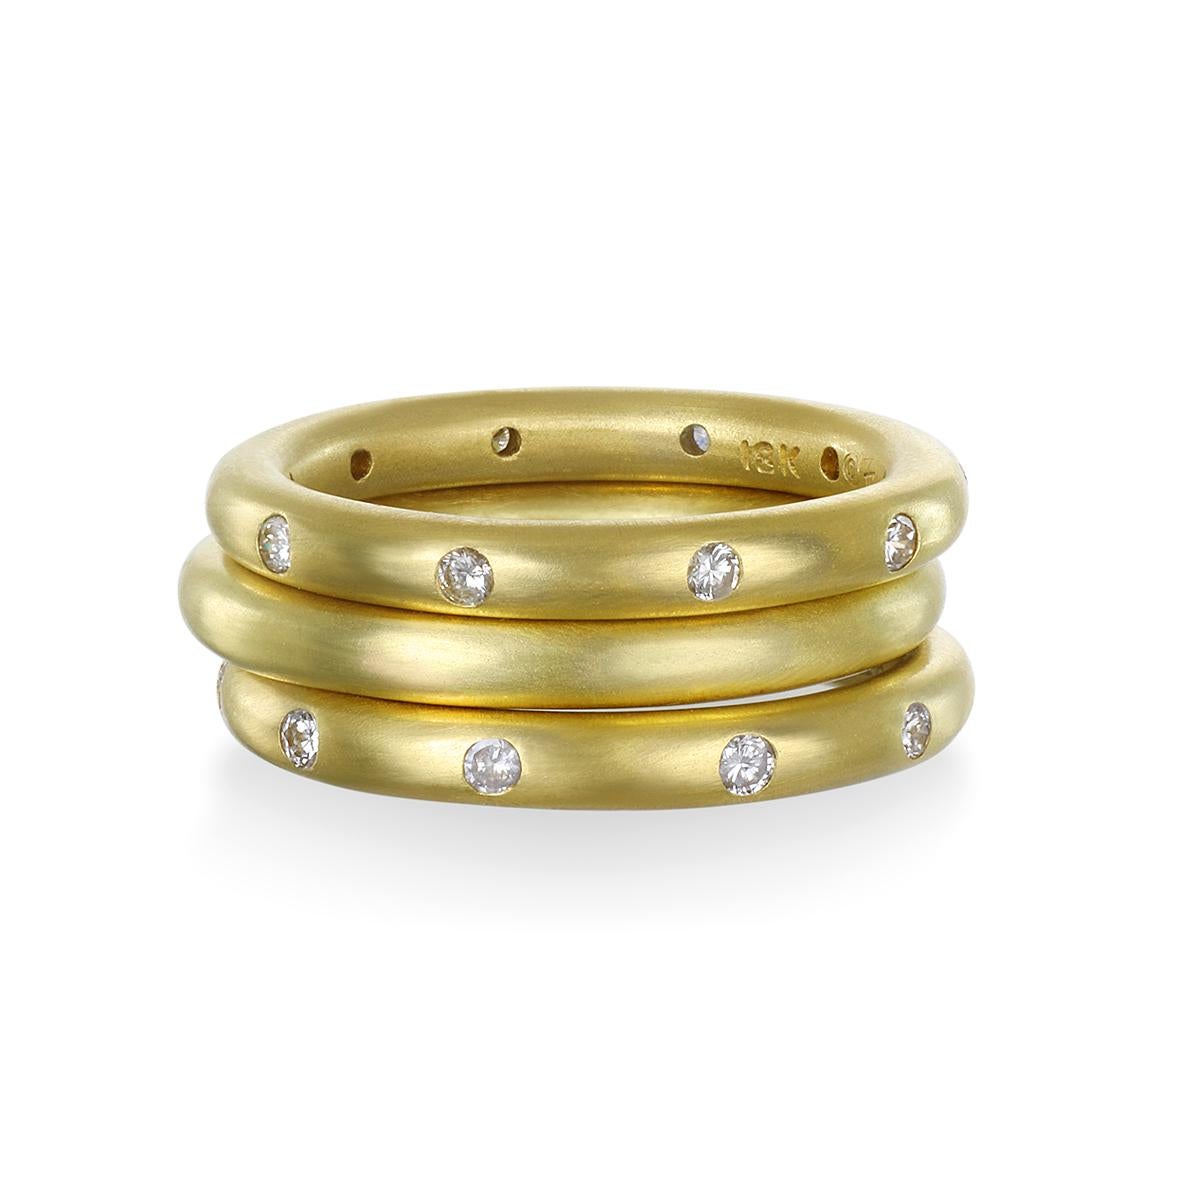 Die strahlend weißen, polierten Diamanten in Faye Kims 18-karätigem Goldring leuchten hell und sind ein Dauerbrenner aus ihrer unverkennbaren Kollektion. Unendliche Möglichkeiten zum Tragen, Stapeln und Genießen!

Größe: 6 verfügbar; kann in der